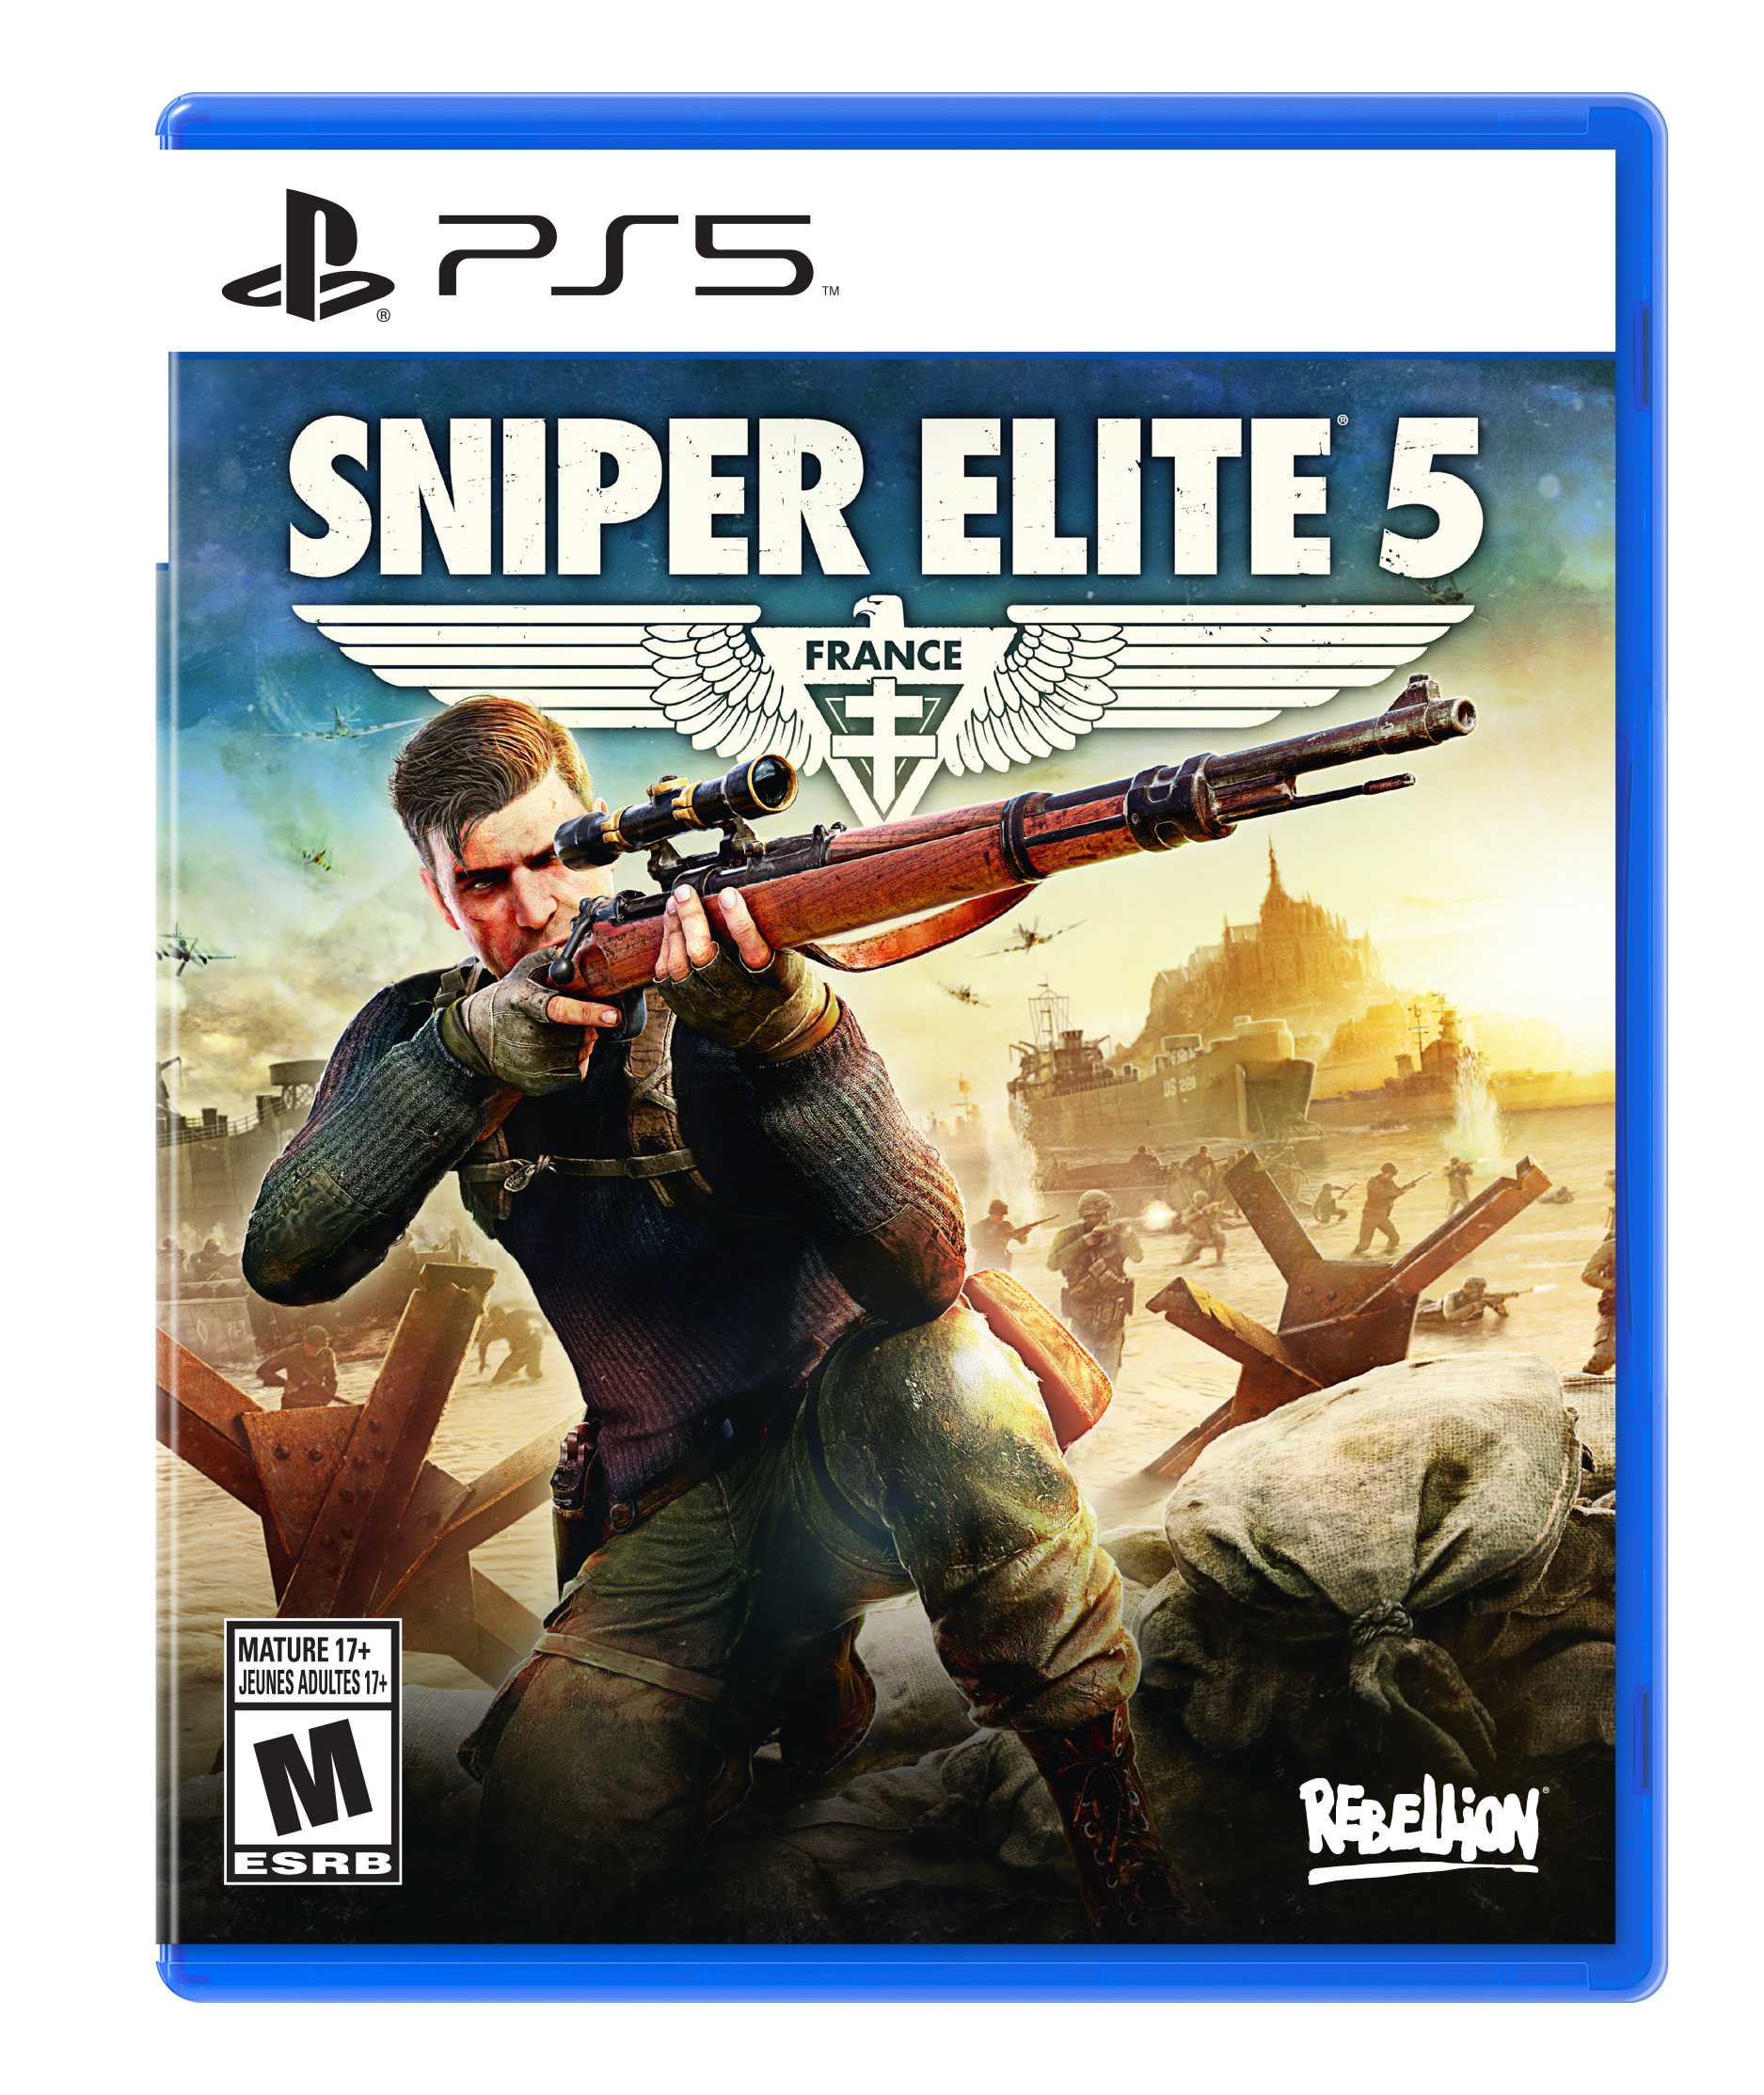 Sniper elite 4 v 1.5.0 все dlc | rus скачать торрент. sniper elite 4 deluxe edition что входит